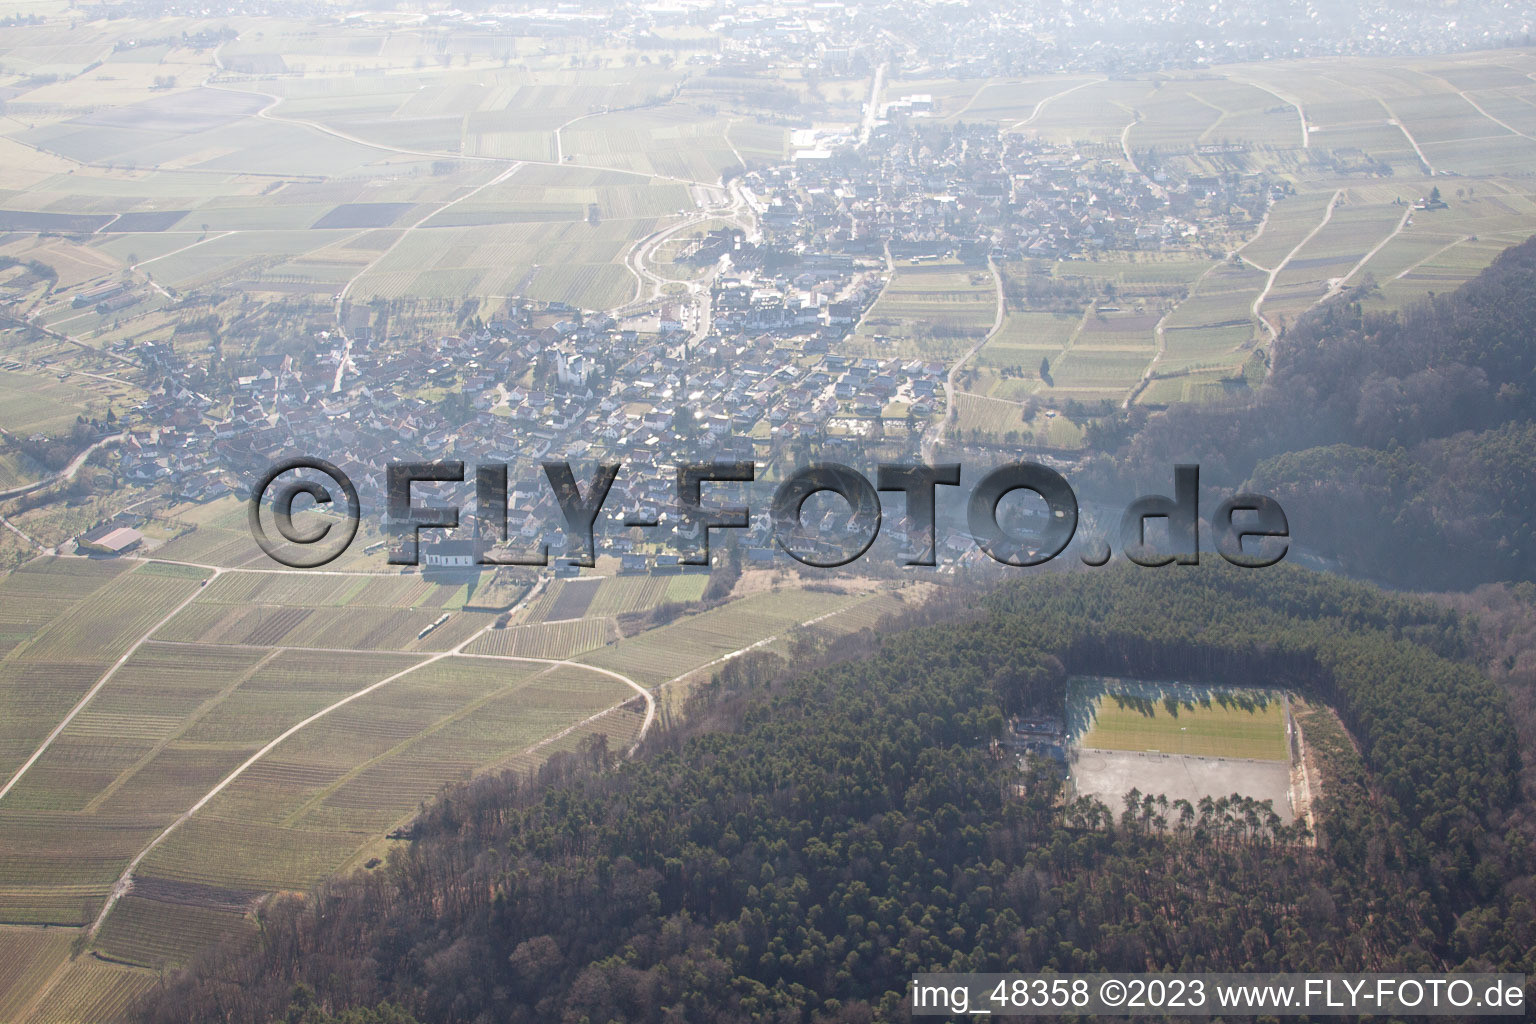 Oberotterbach dans le département Rhénanie-Palatinat, Allemagne vue d'en haut